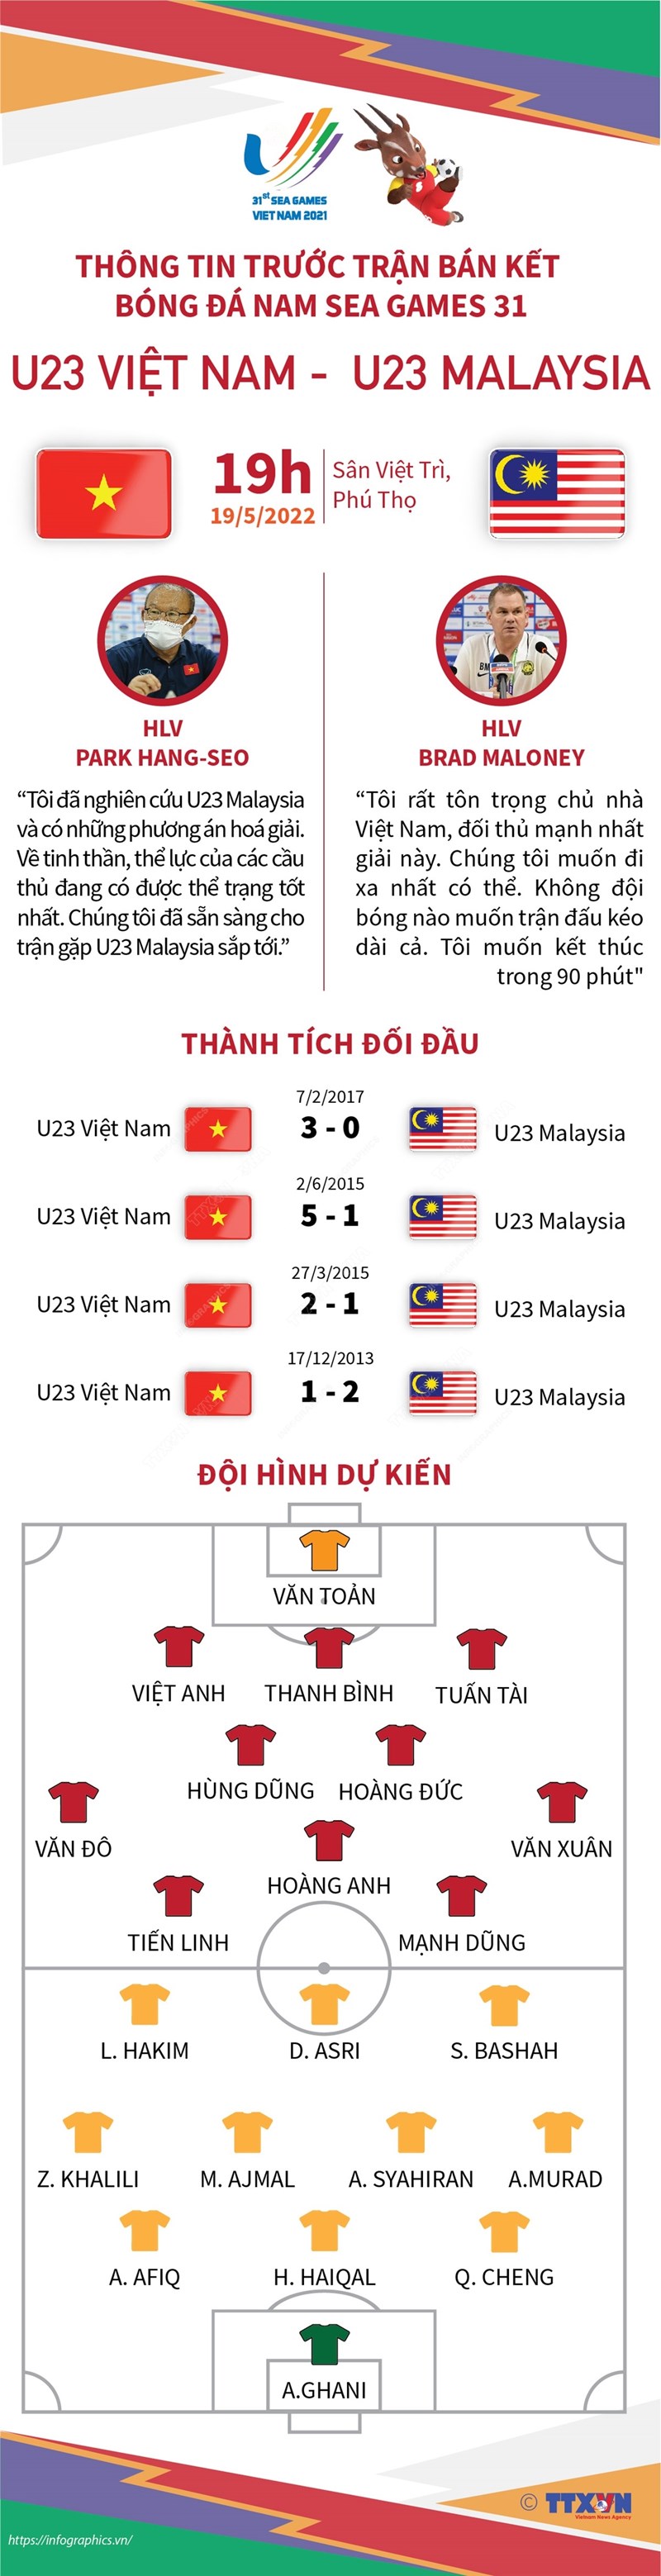 SEA Games 31: Thông tin trước trận bán kết bóng đá nam U23 Việt Nam và U23 Malaysia